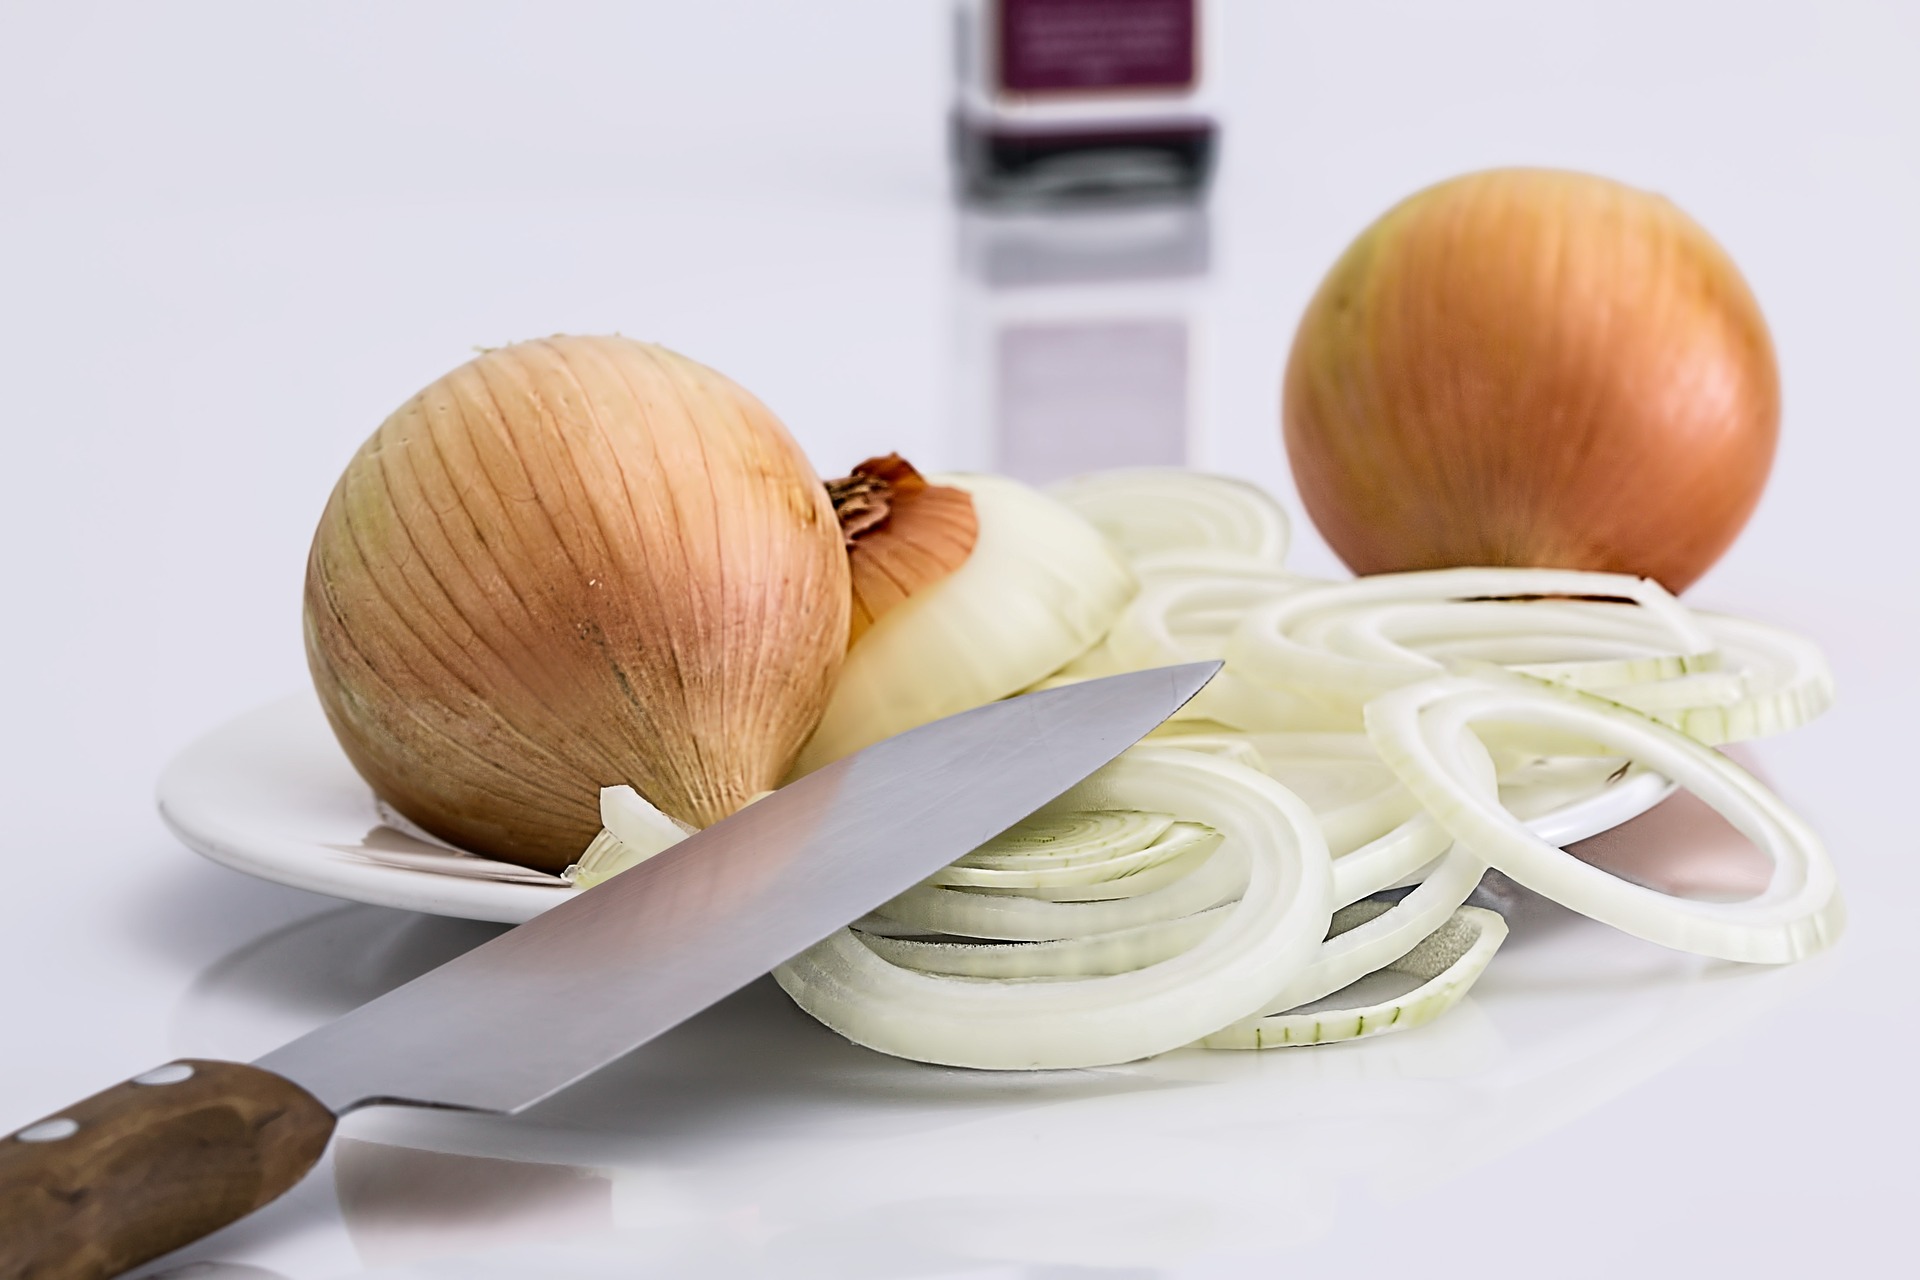 La cebolla es importante para la cocina y su uso otorga beneficios. (Foto Prensa Libre: Pixabay)